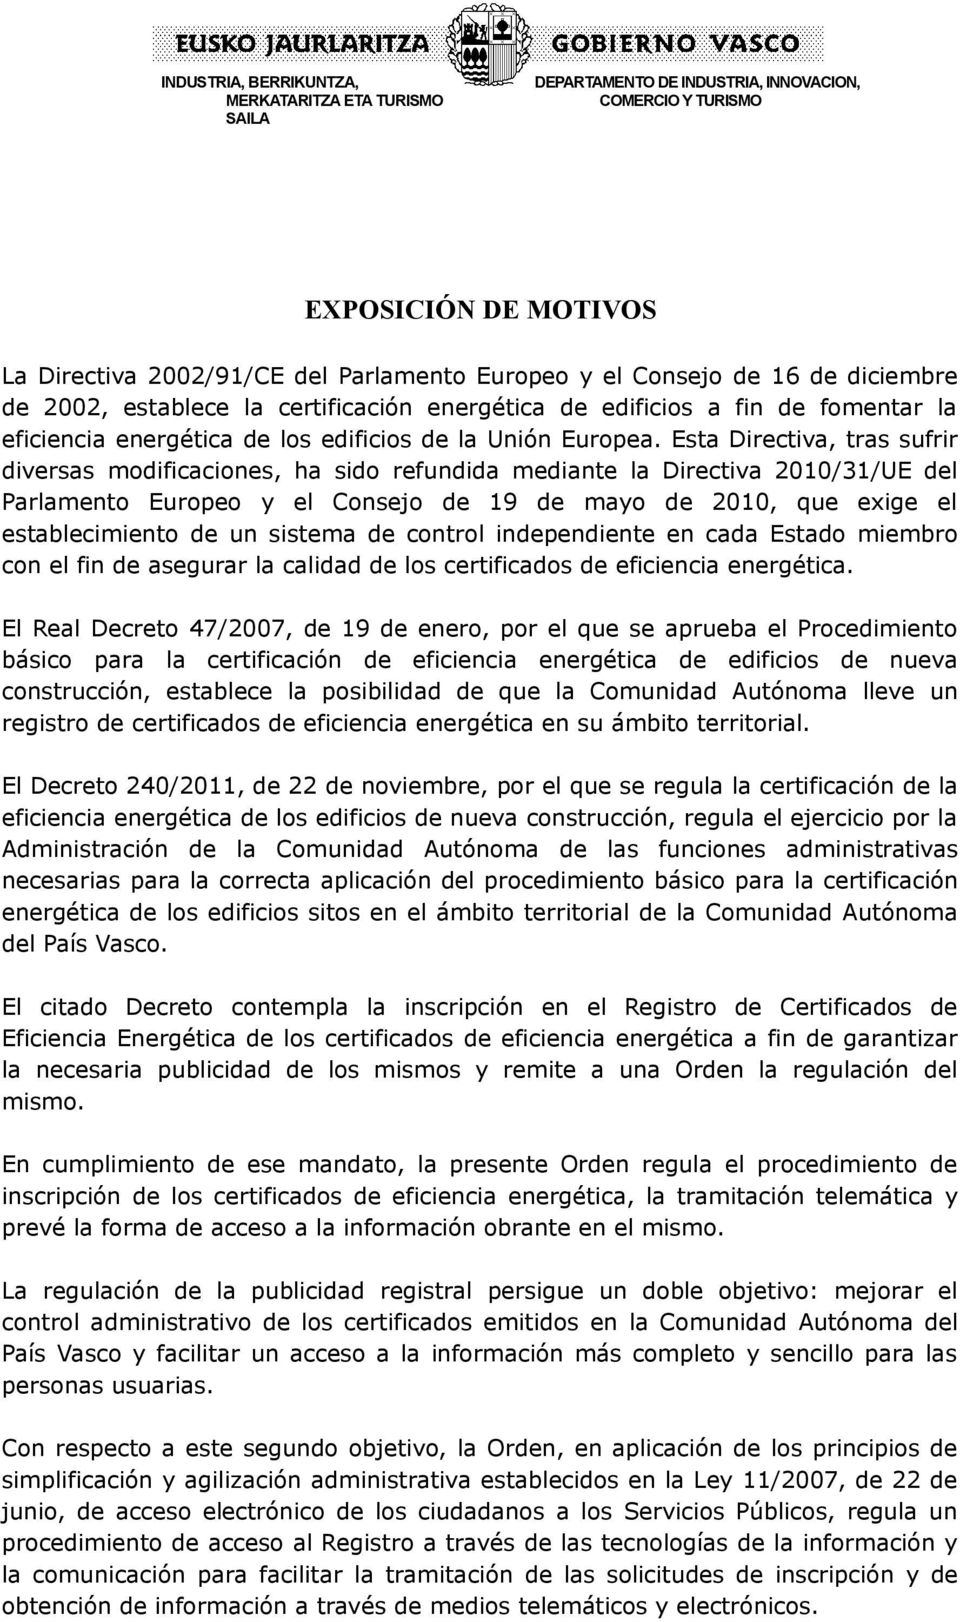 Esta Directiva, tras sufrir diversas modificaciones, ha sido refundida mediante la Directiva 2010/31/UE del Parlamento Europeo y el Consejo de 19 de mayo de 2010, que exige el establecimiento de un